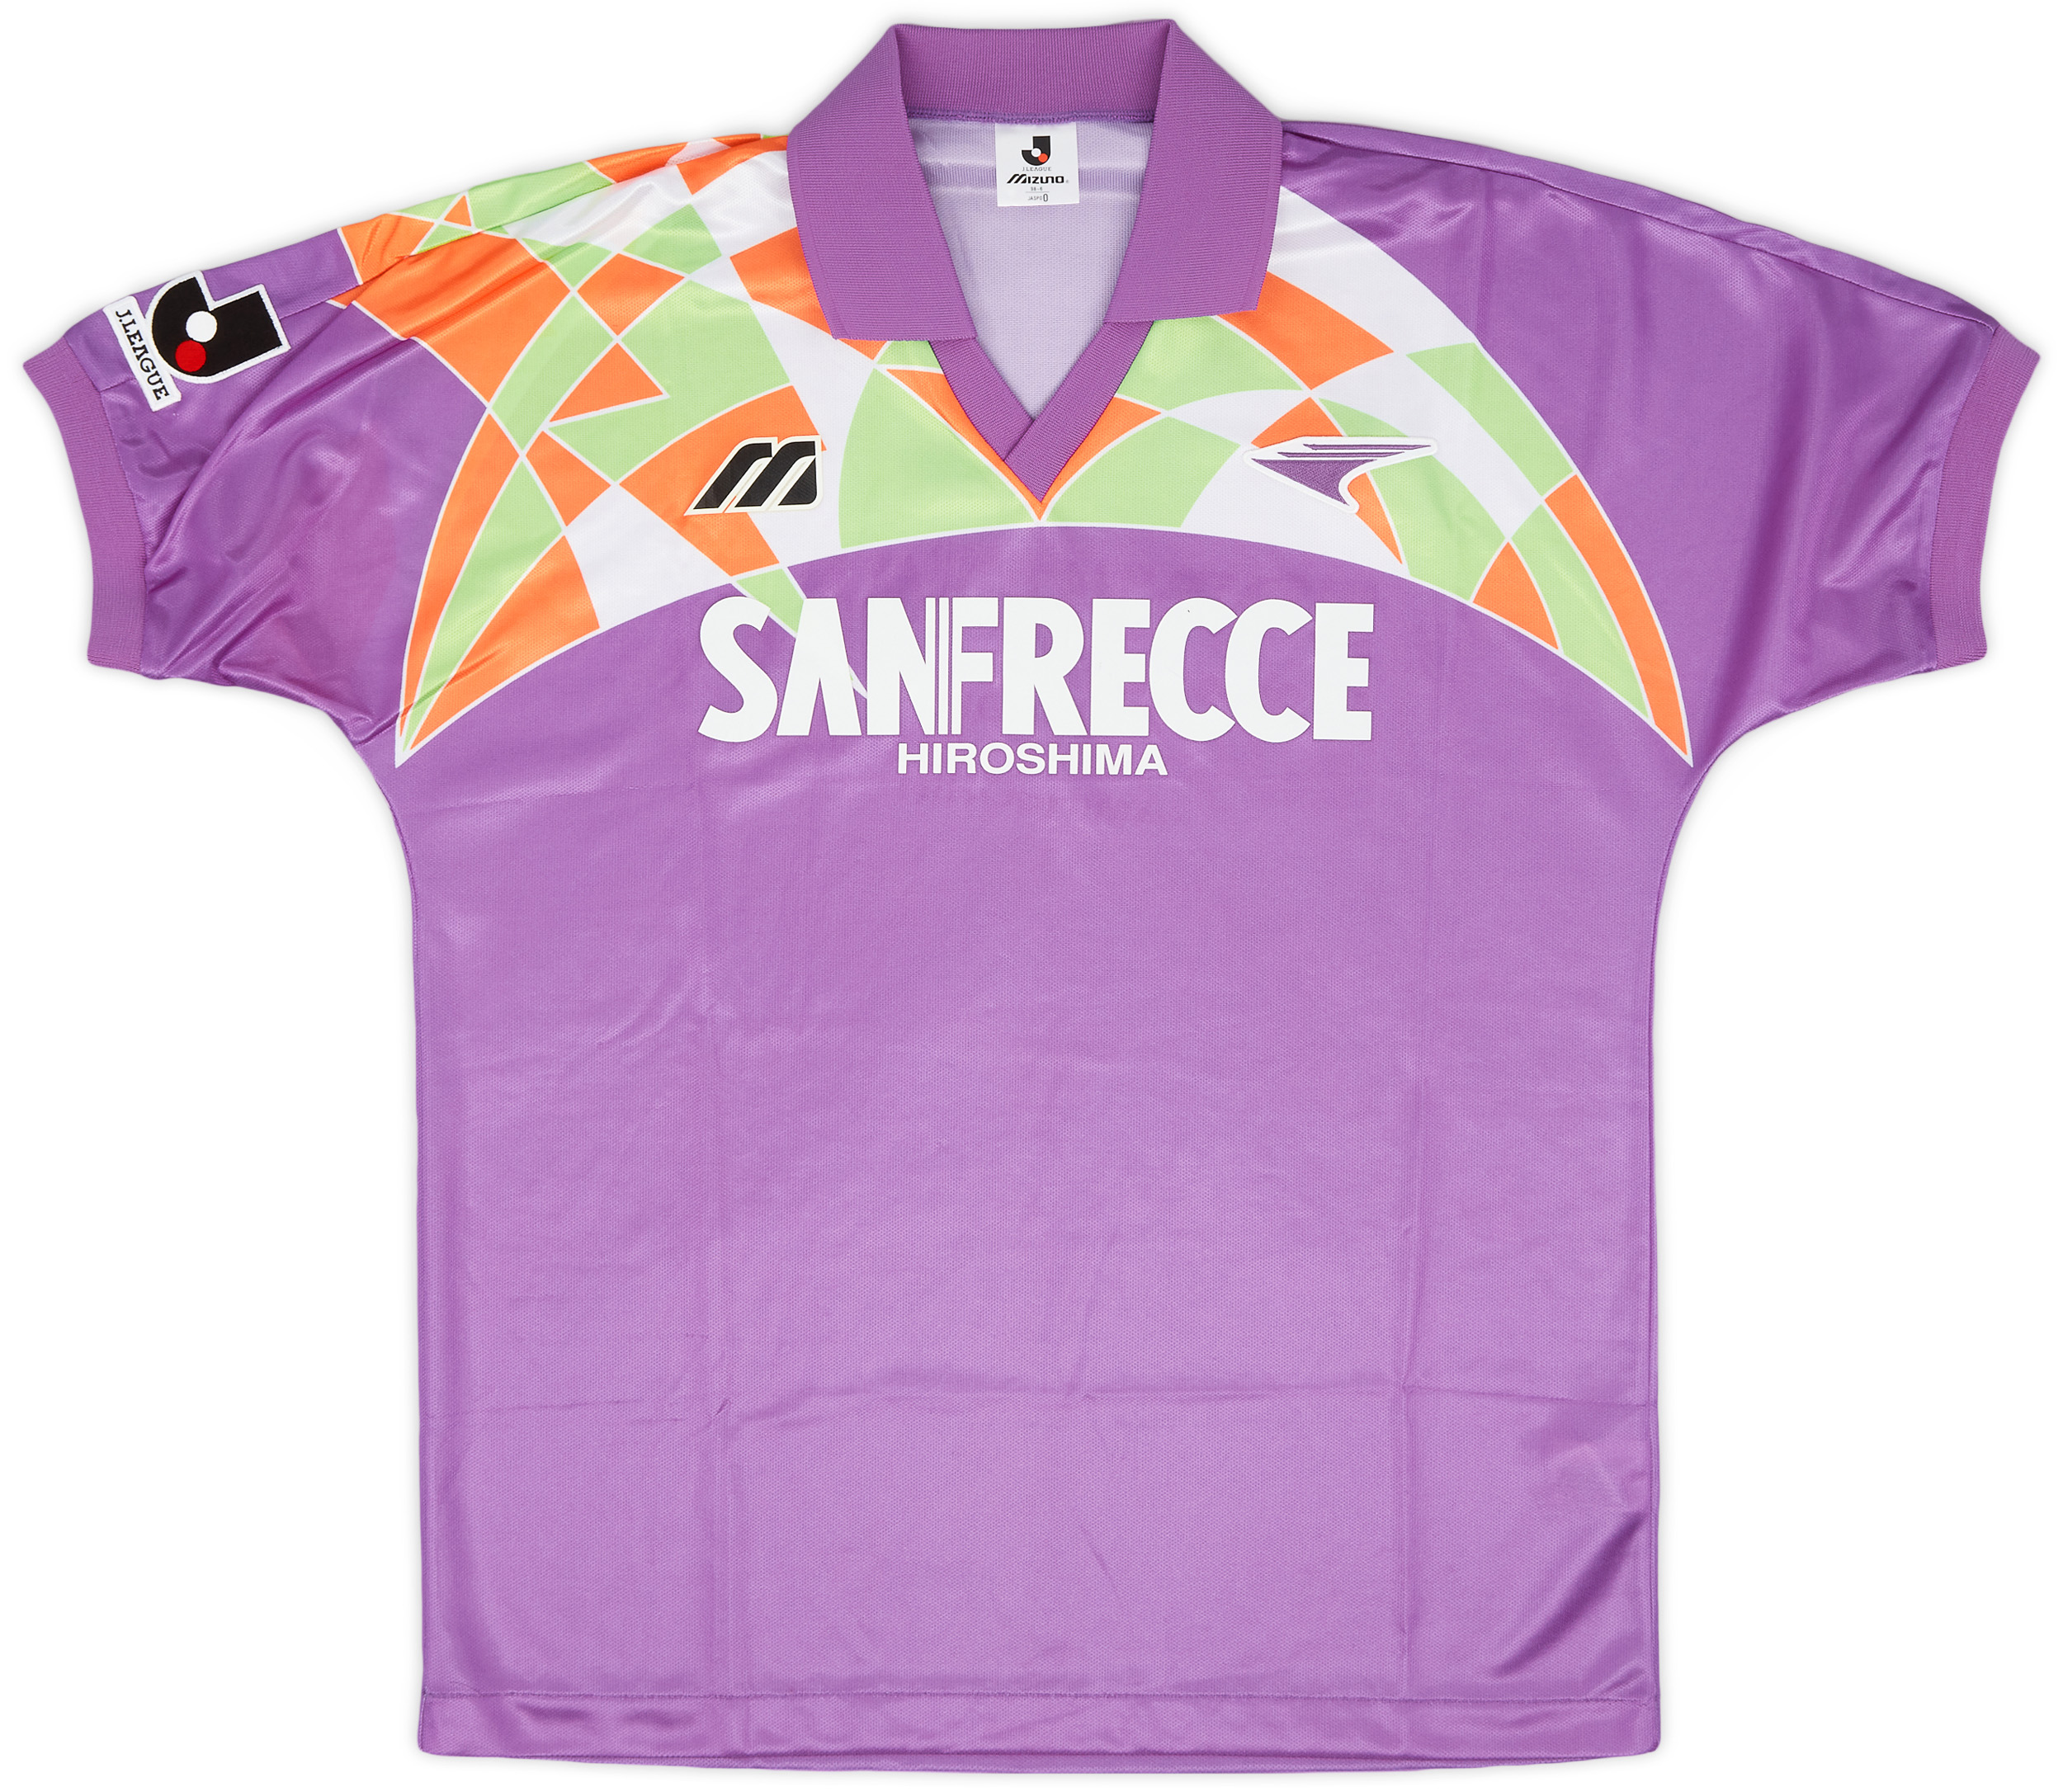 1993 Sanfrecce Hiroshima Home Shirt - 9/10 - ()